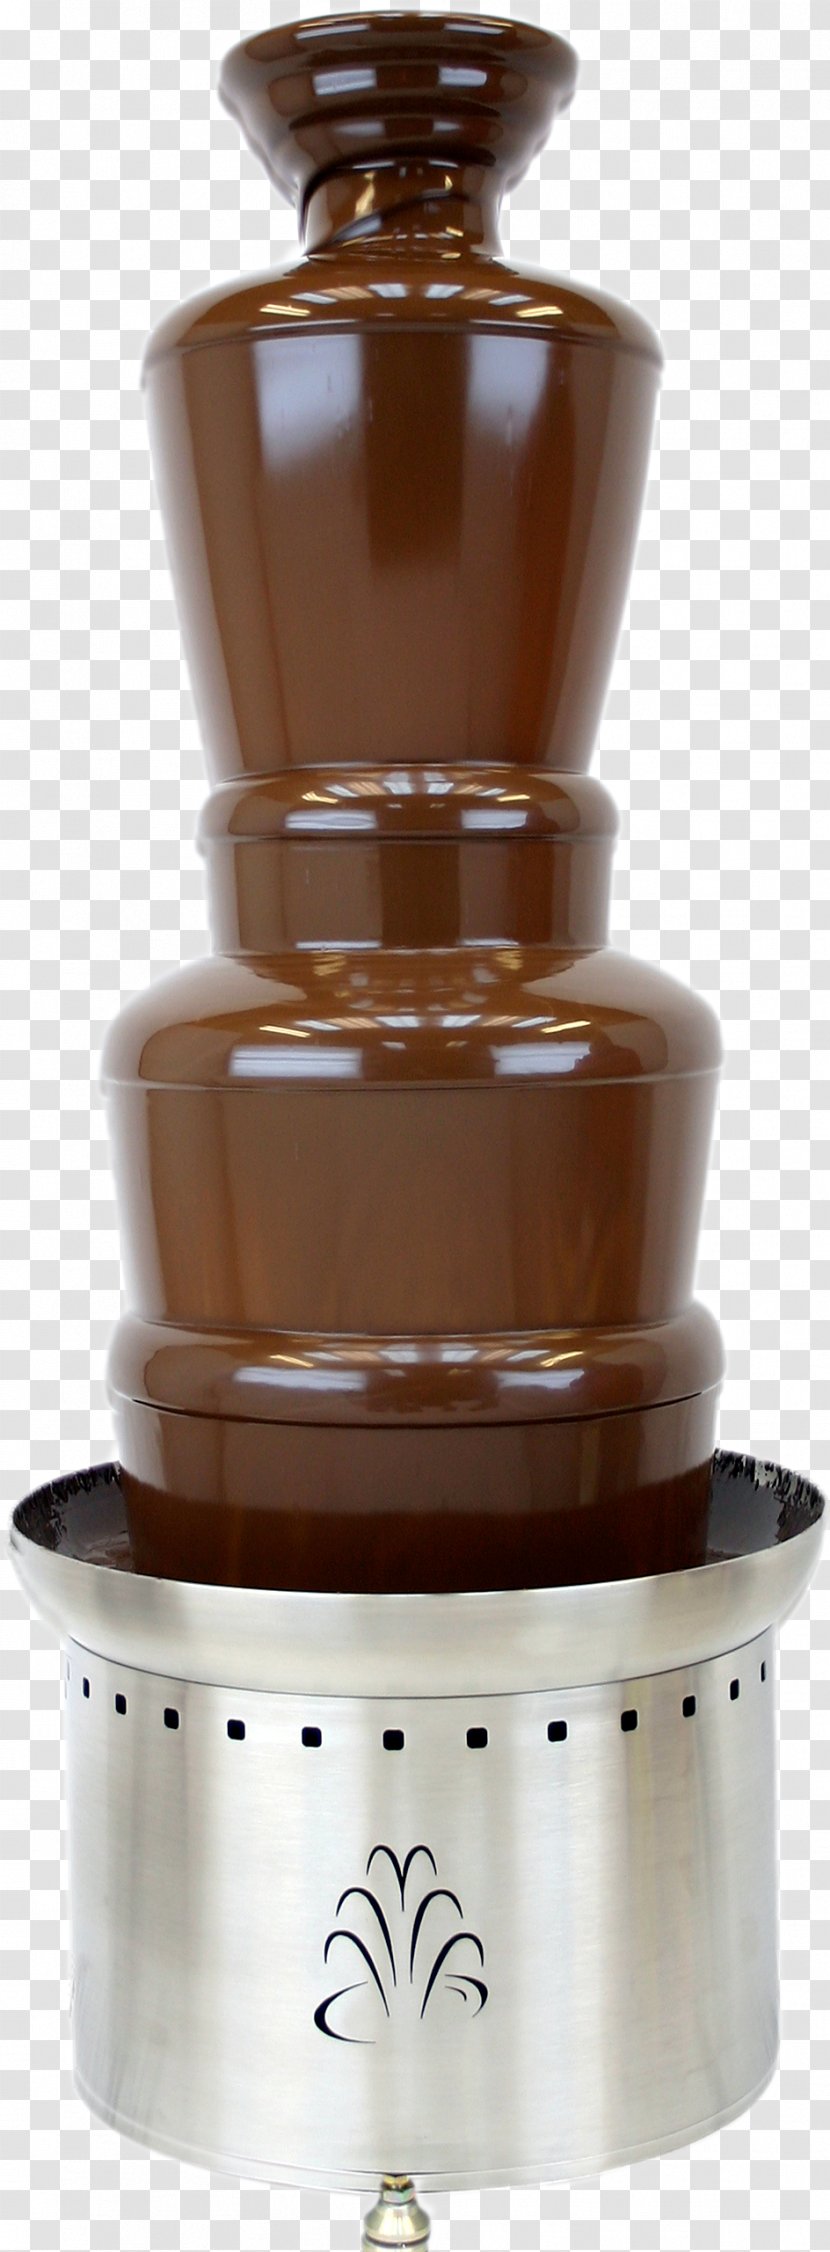 Buffet Chocolate Fountain Fondue - Quiosco De Golosinas Transparent PNG